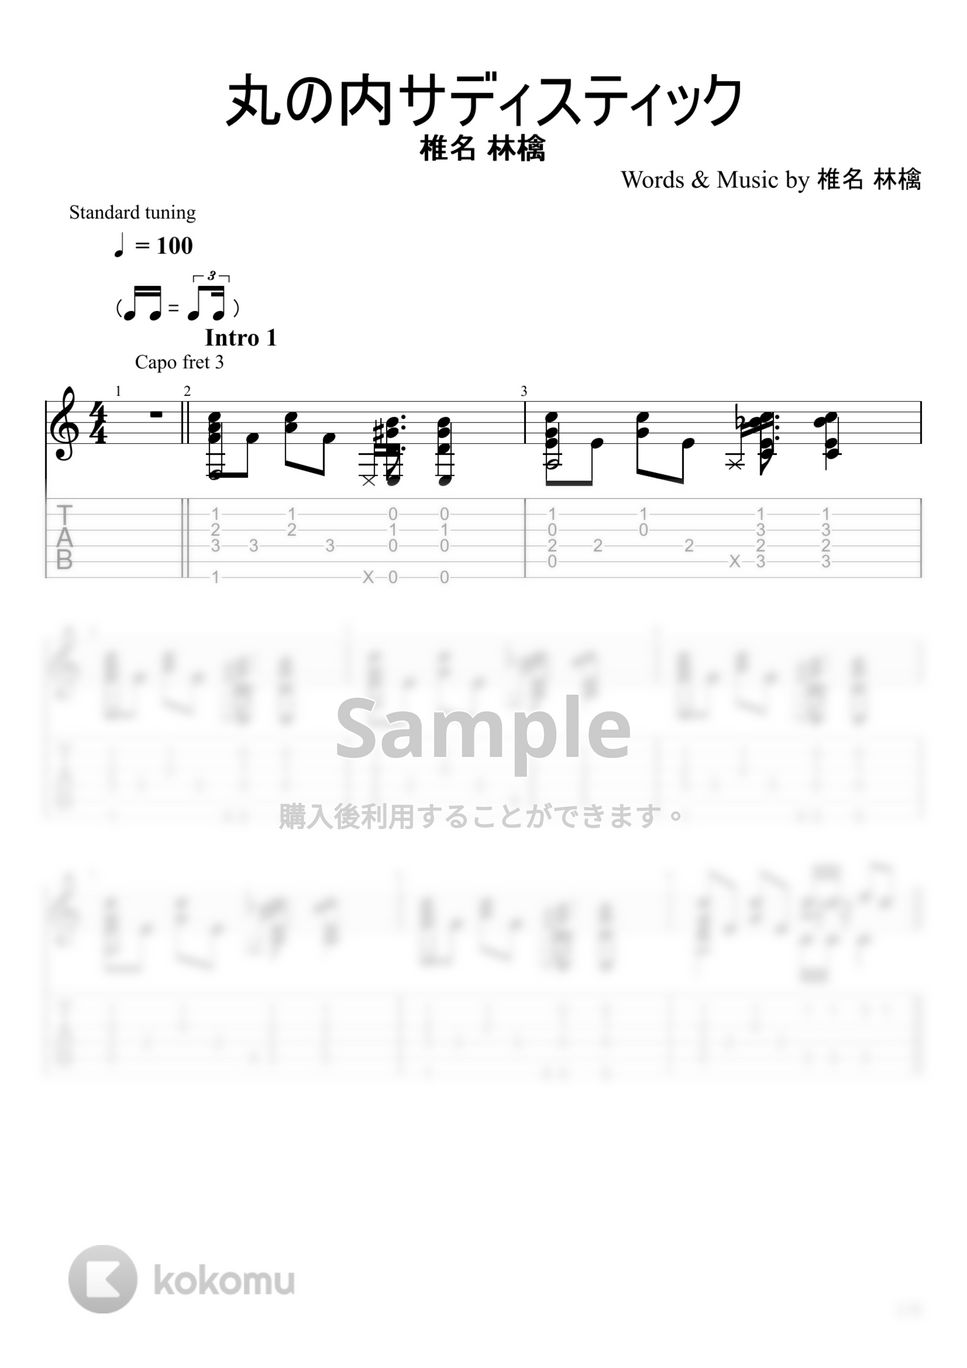 椎名林檎 - 丸の内サディスティック (ソロギター) by u3danchou